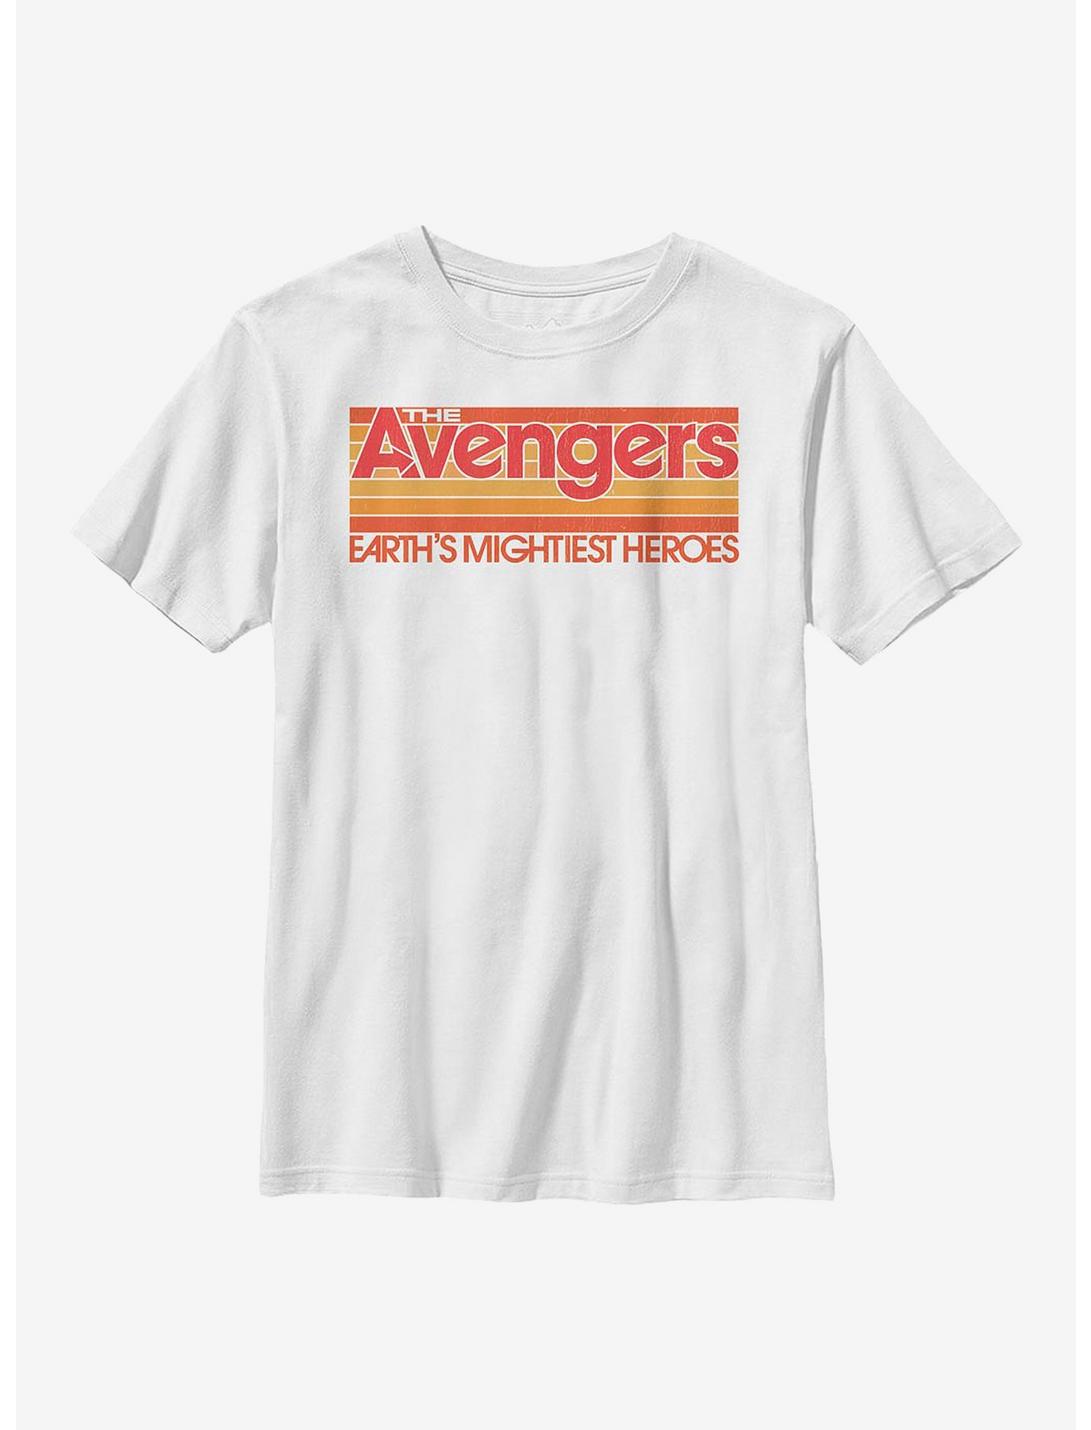 Marvel Avengers Retro Avengers Youth T-Shirt, WHITE, hi-res